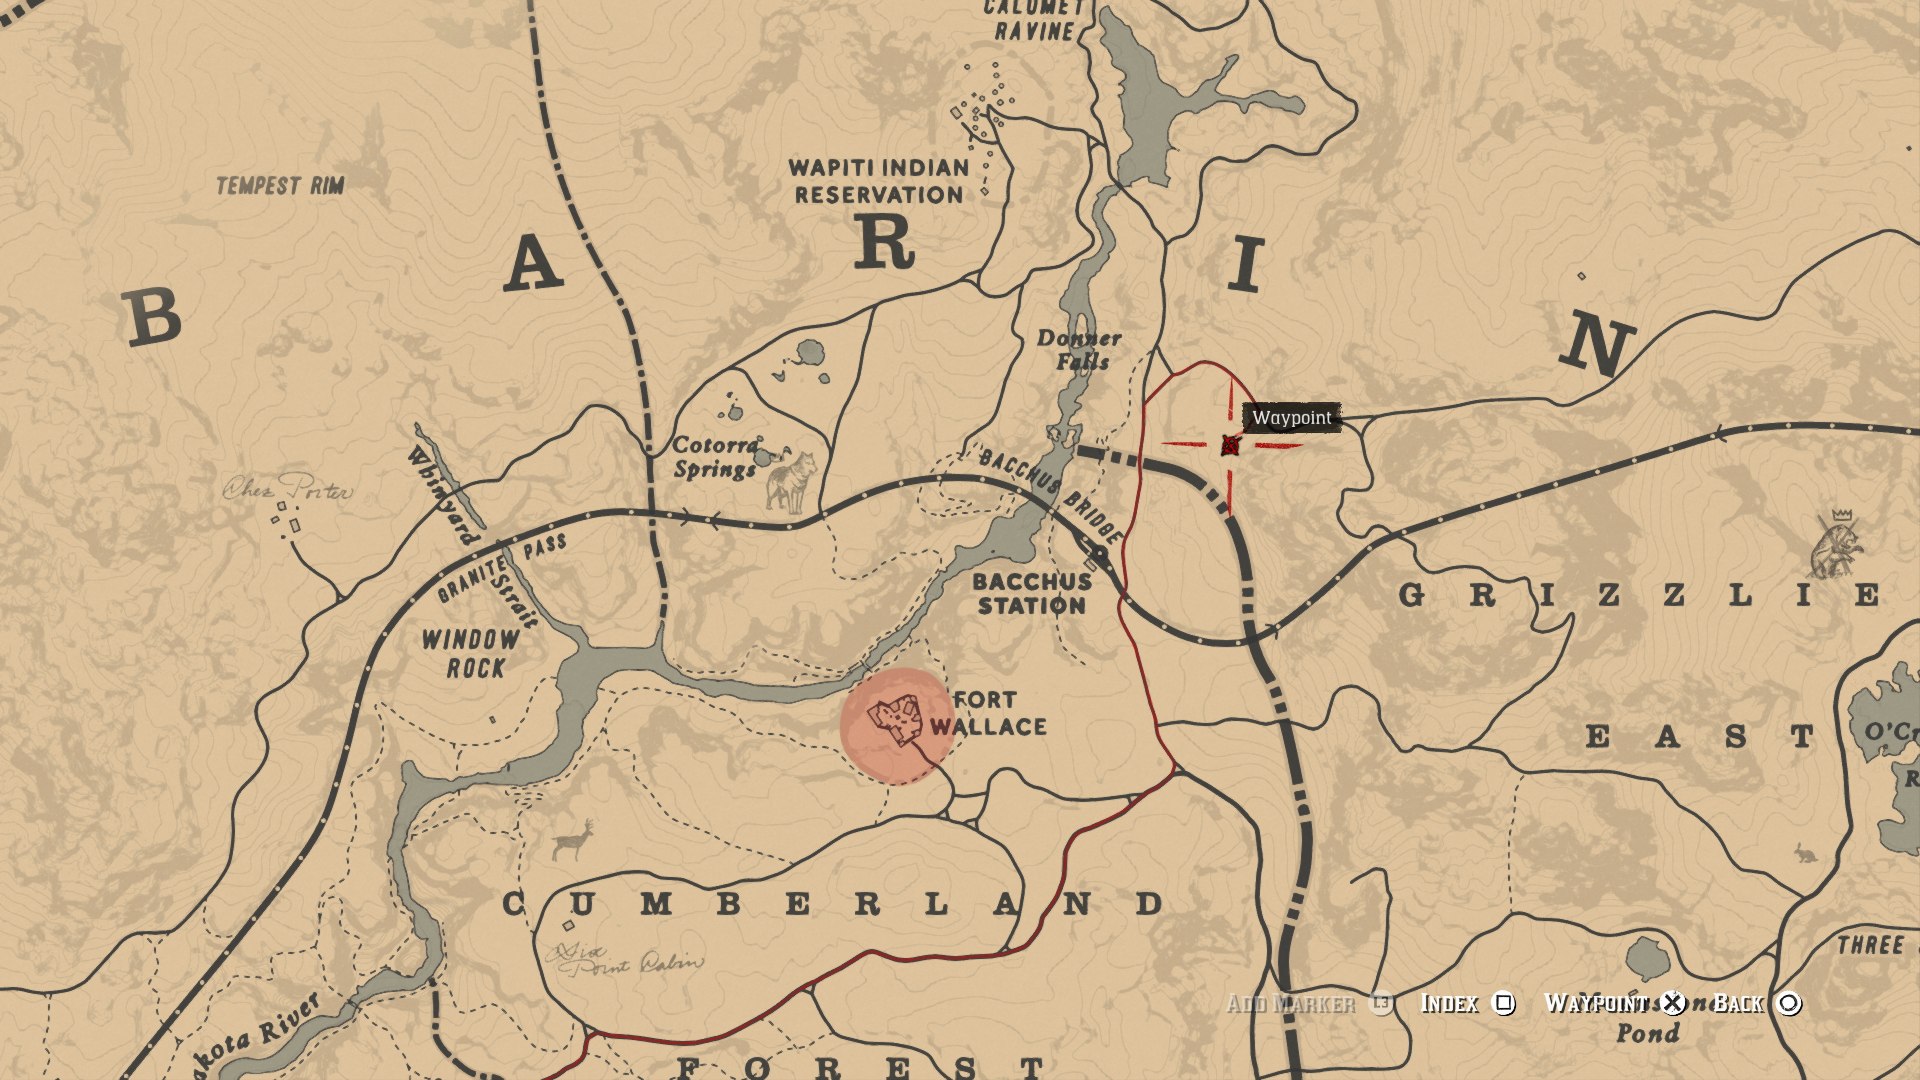 A morte e o Túmulo de Arthur em Red Dead Redemption 2